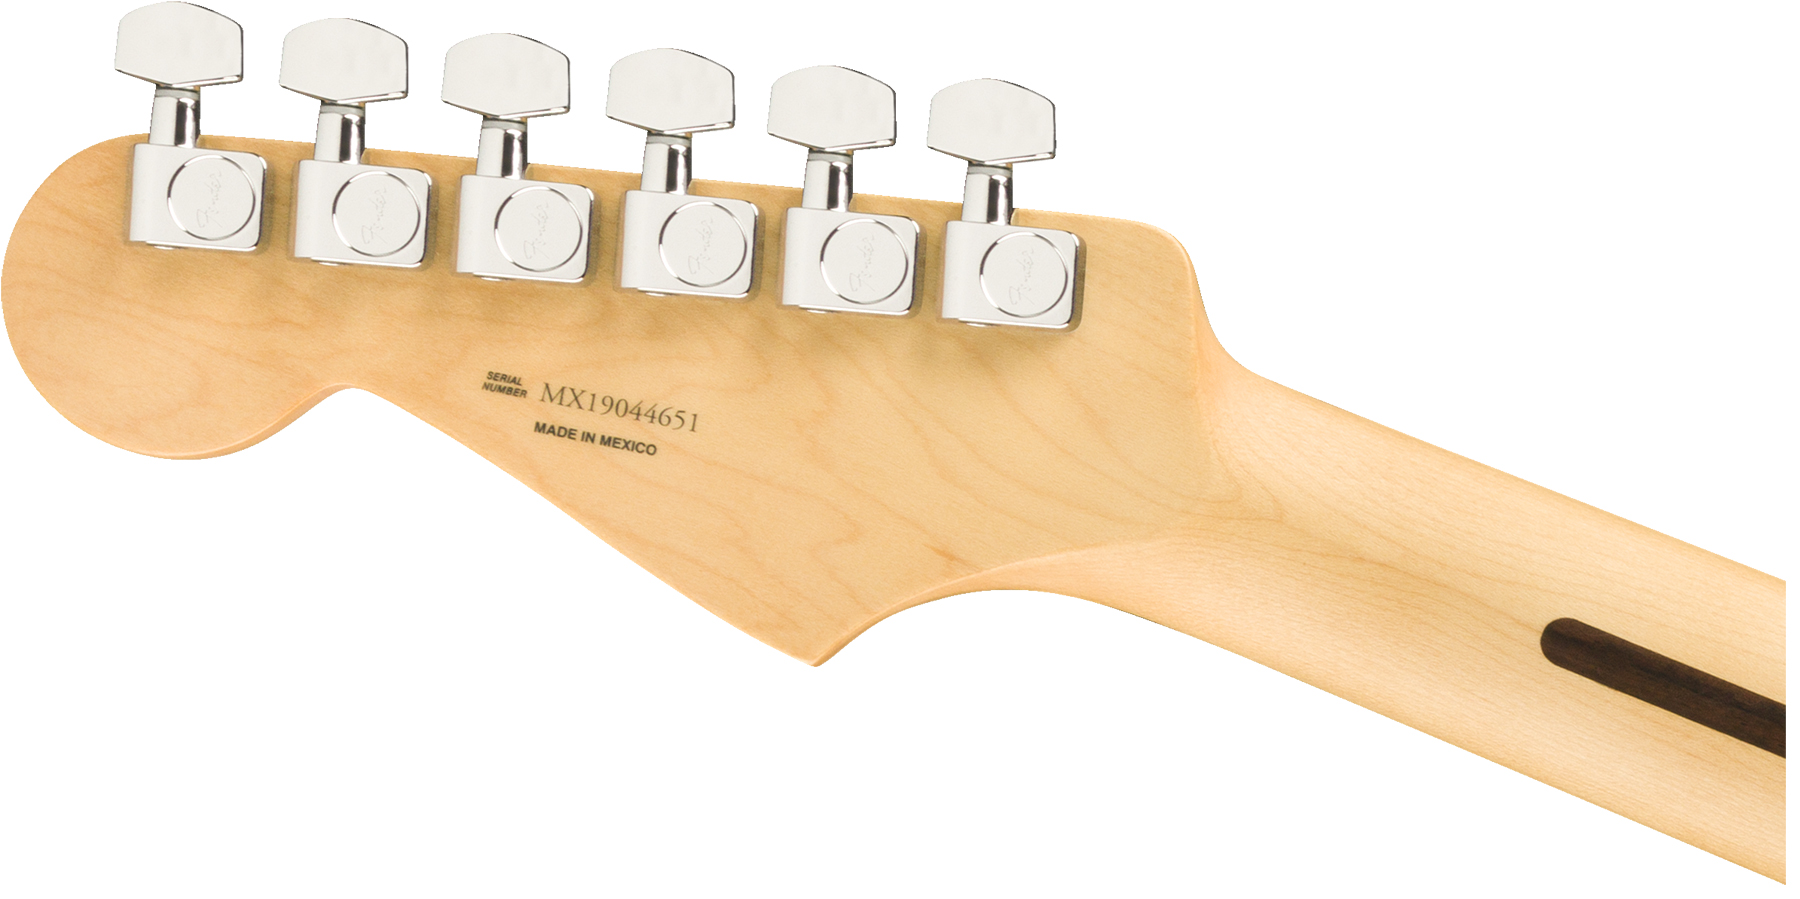 Fender Strat Player Mex 3s Trem Pf - Silver - Elektrische gitaar in Str-vorm - Variation 3